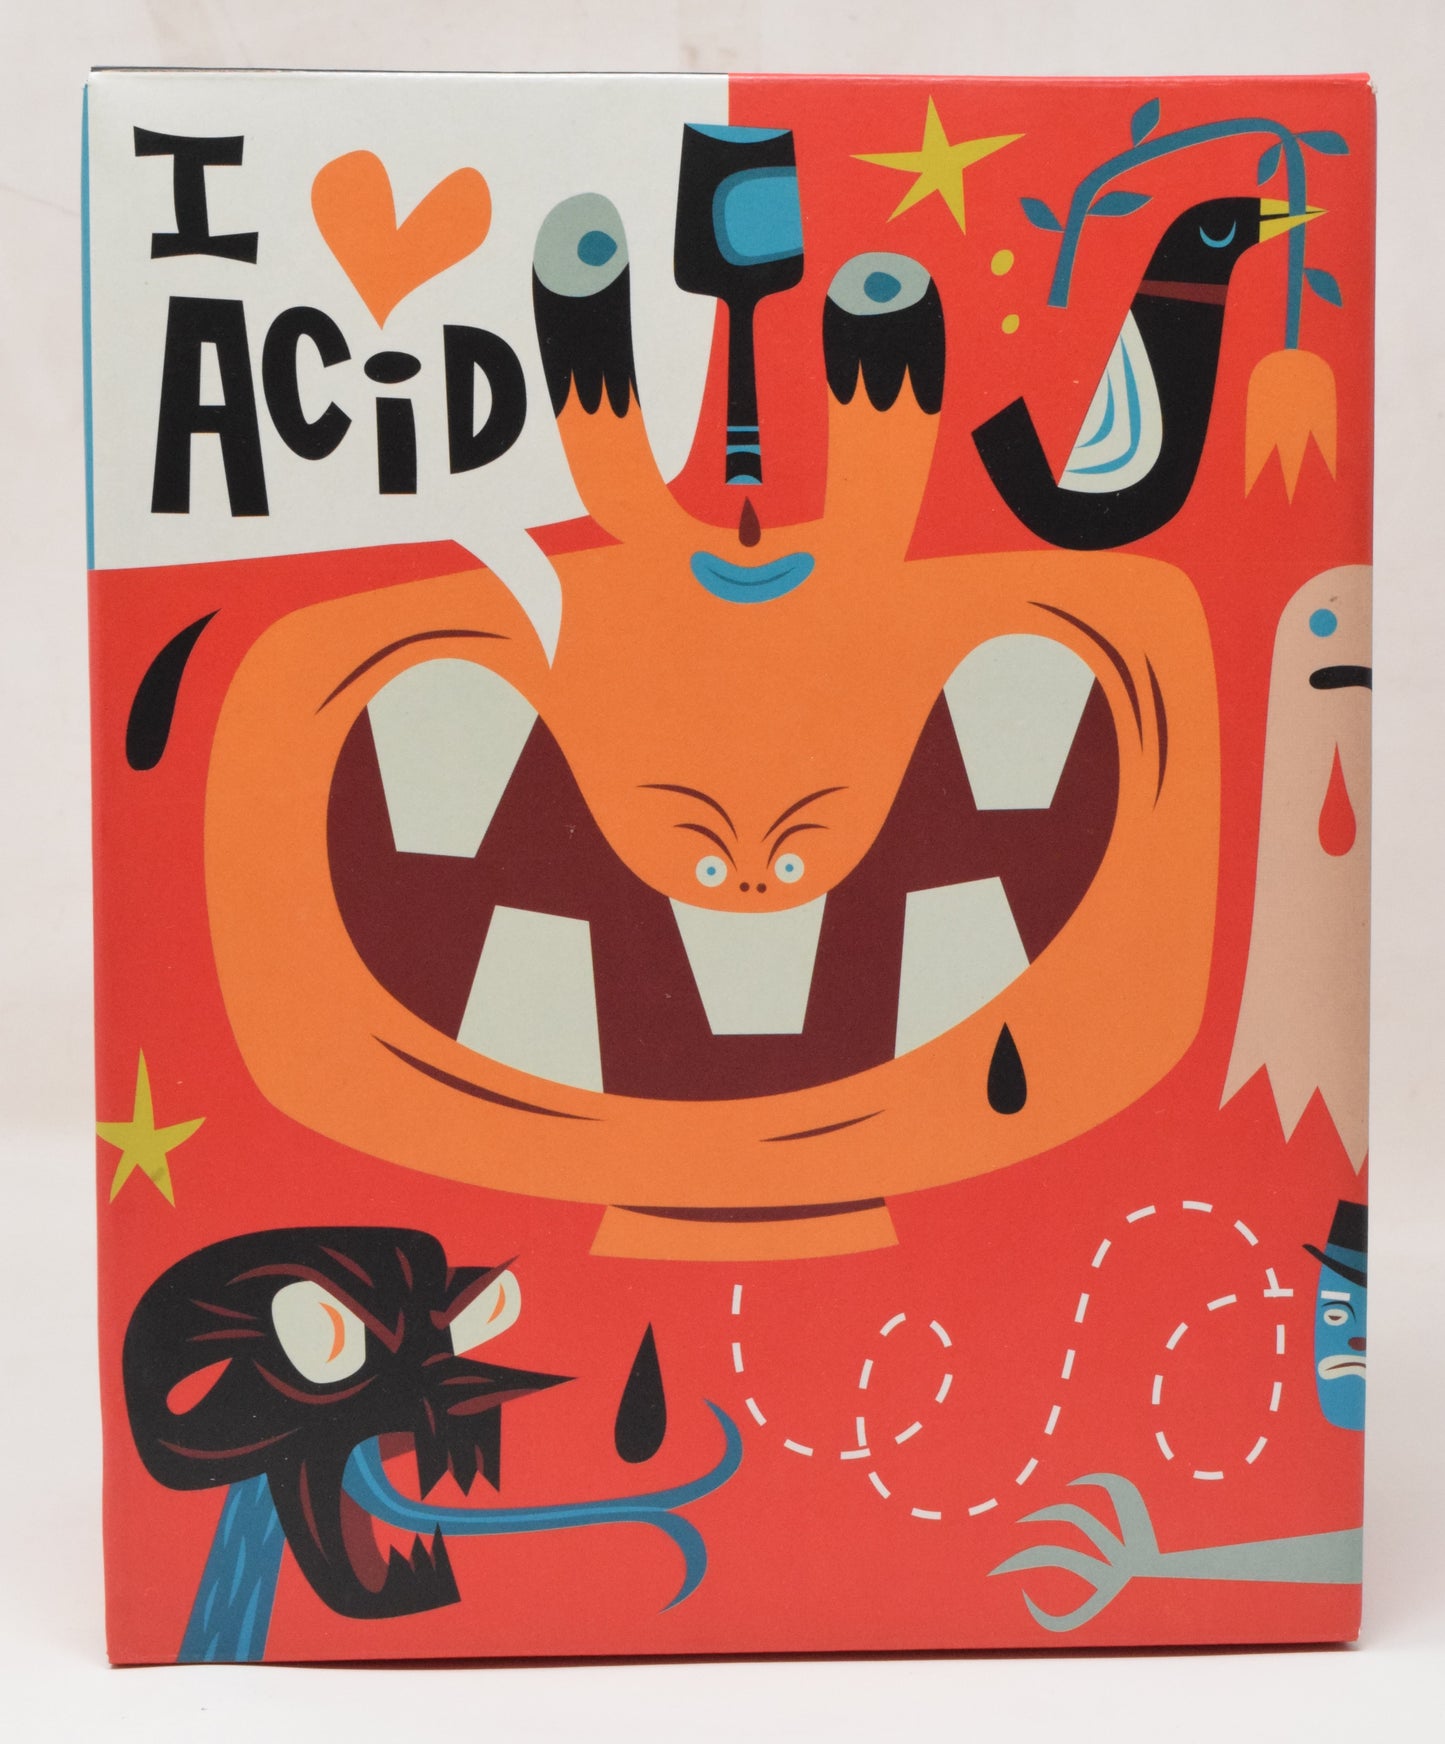 I Love Acid Head Dunny 9" Tim Biskup Kidrobot Vinyl Figure